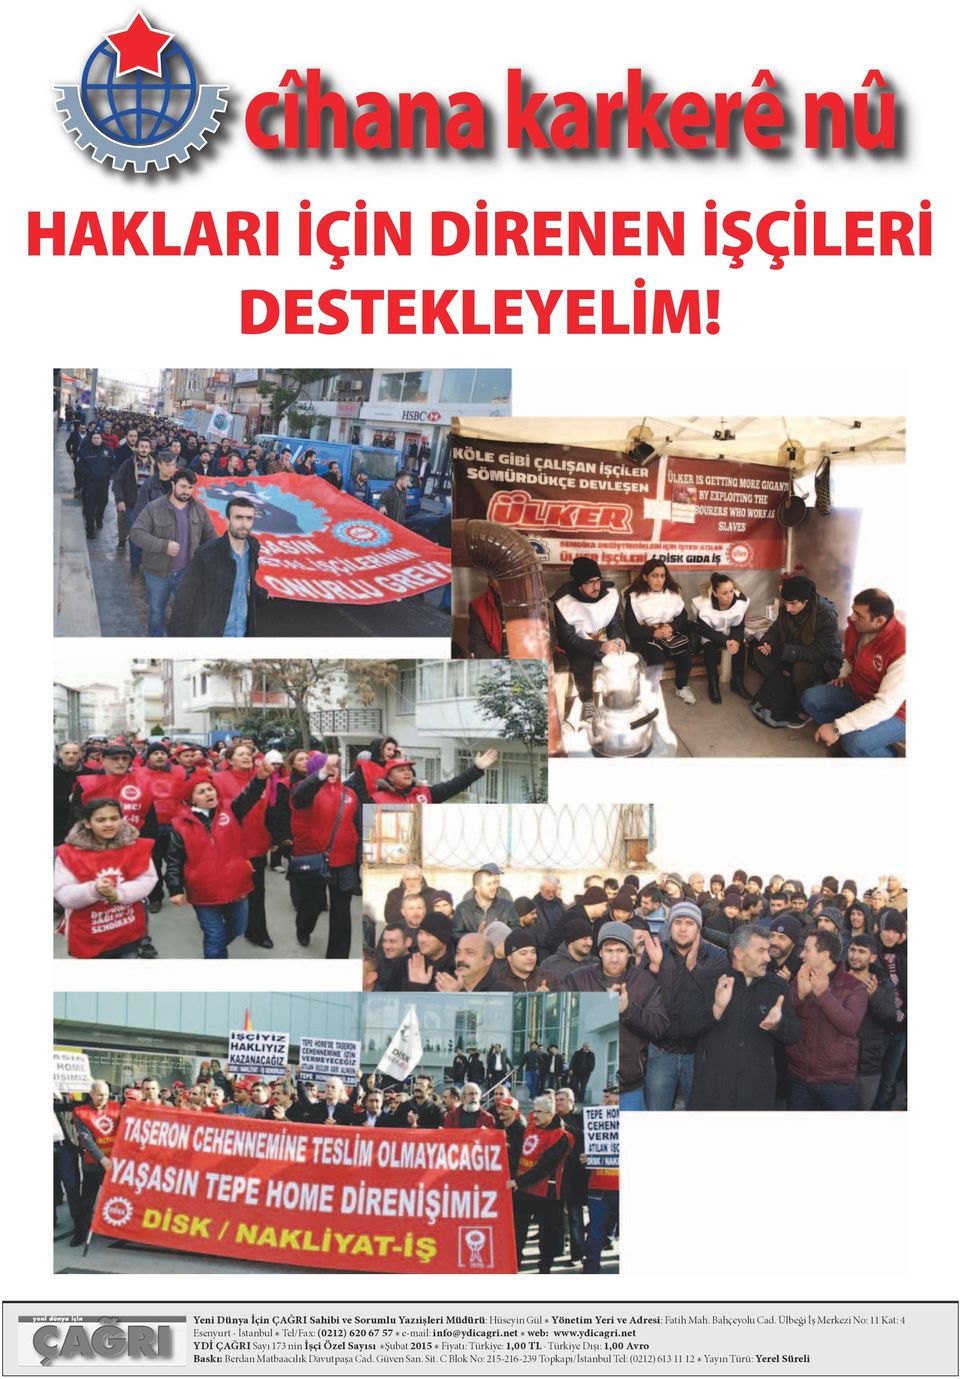 Ülbeği İş Merkezi No: 11 Kat: 4 Esenyurt - İstanbul Tel/Fax: (0212) 620 67 57 e-mail: info@ydicagri.